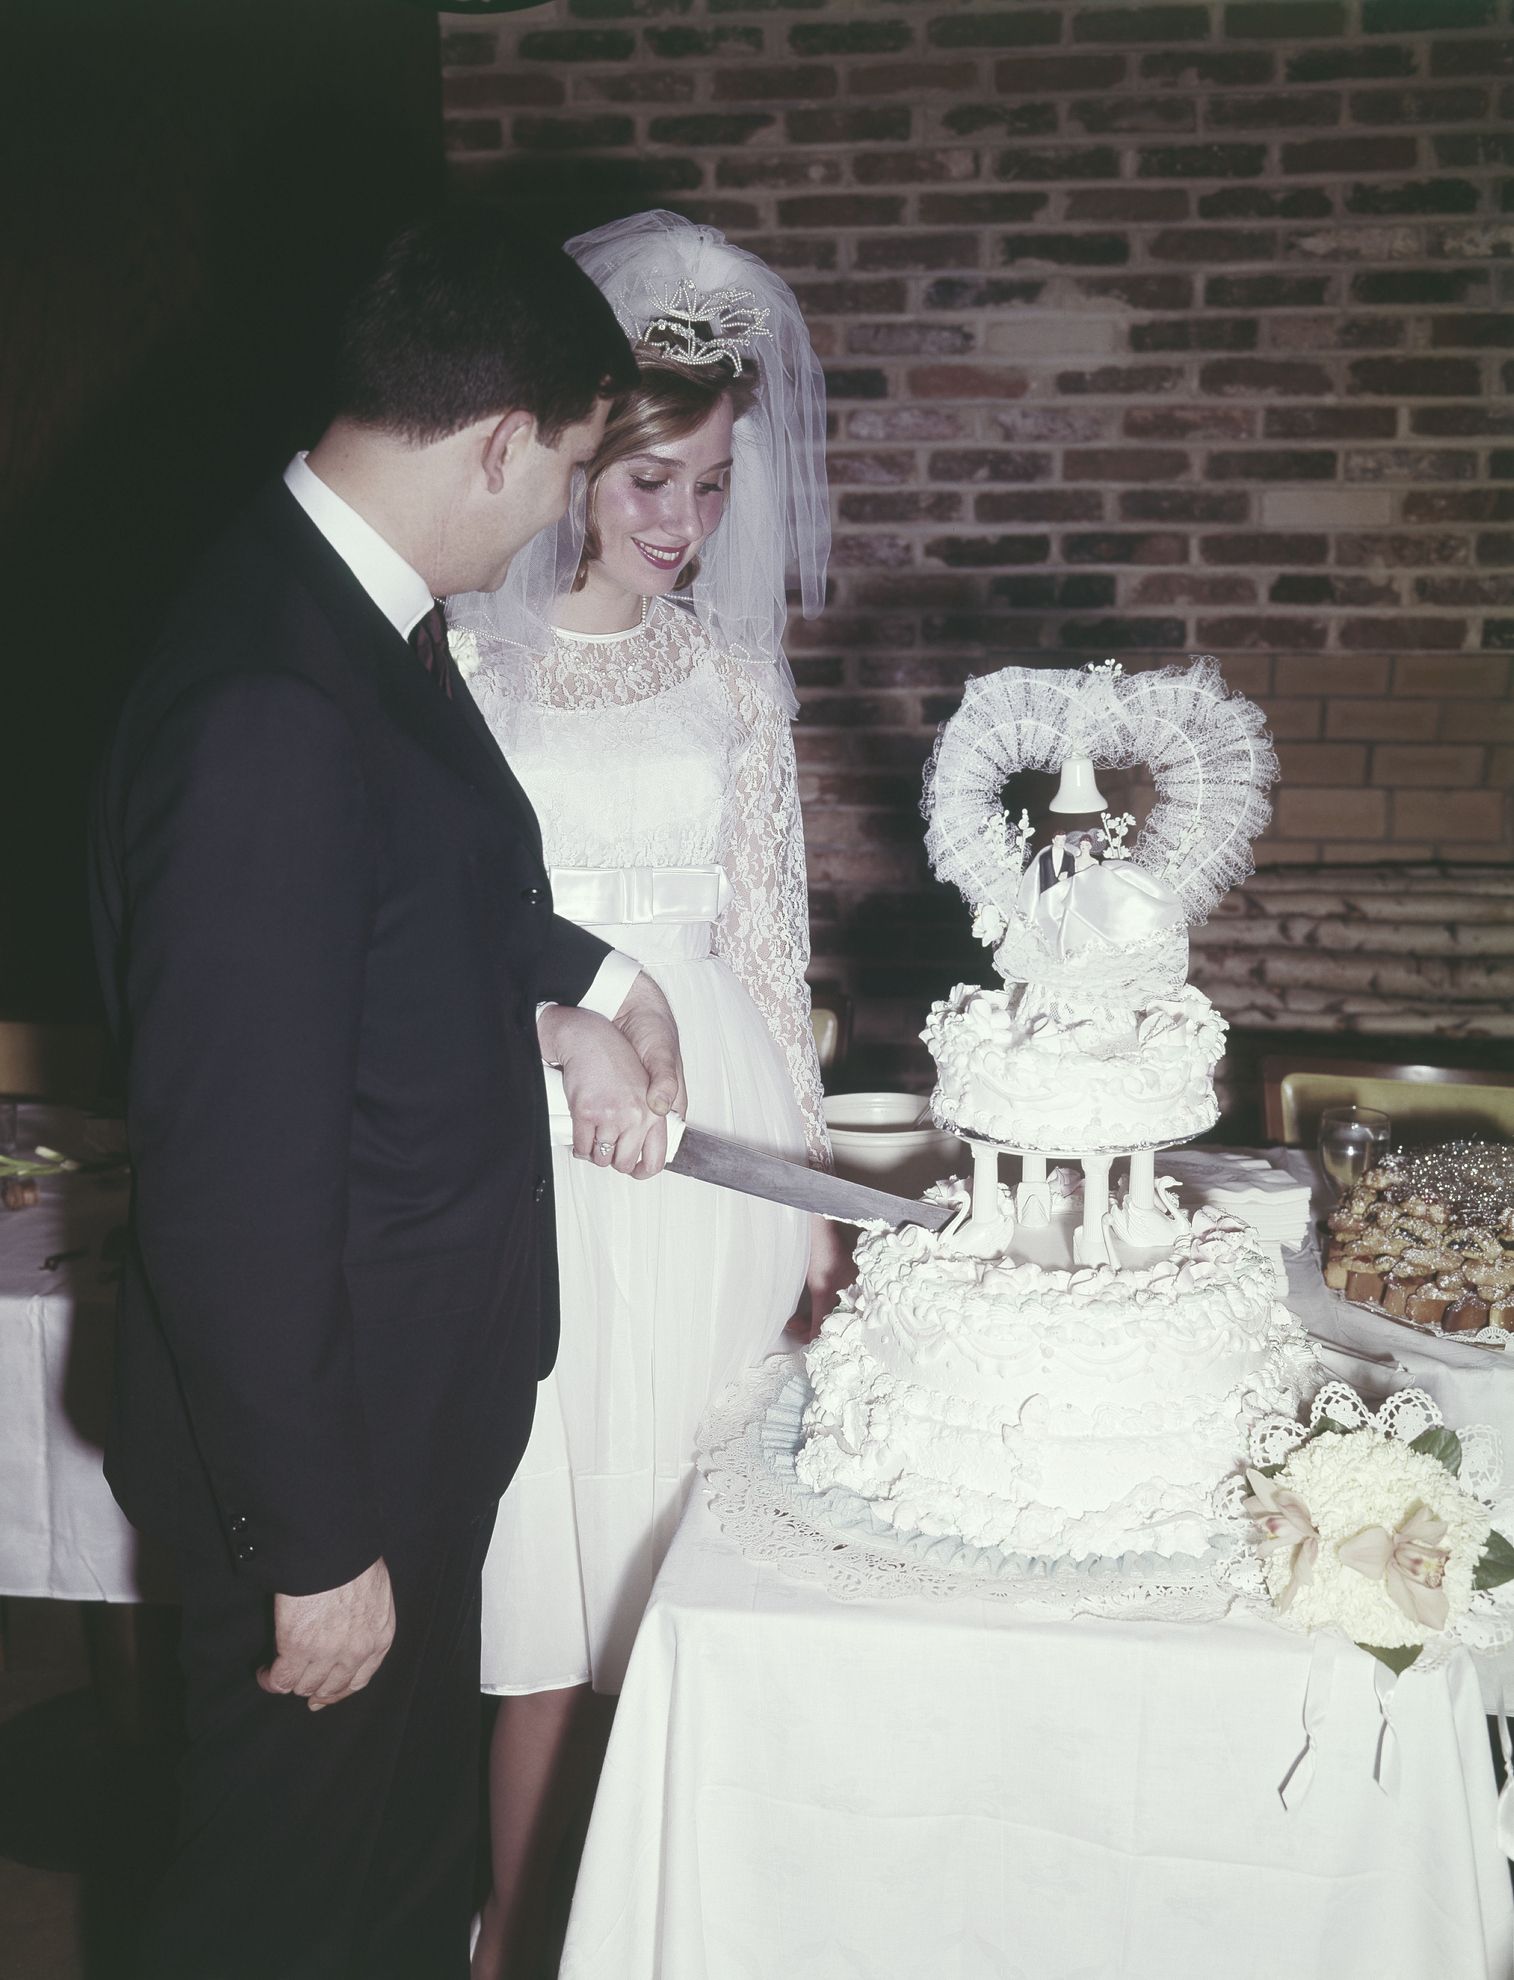 Vintage Wilton Wedding Cakes